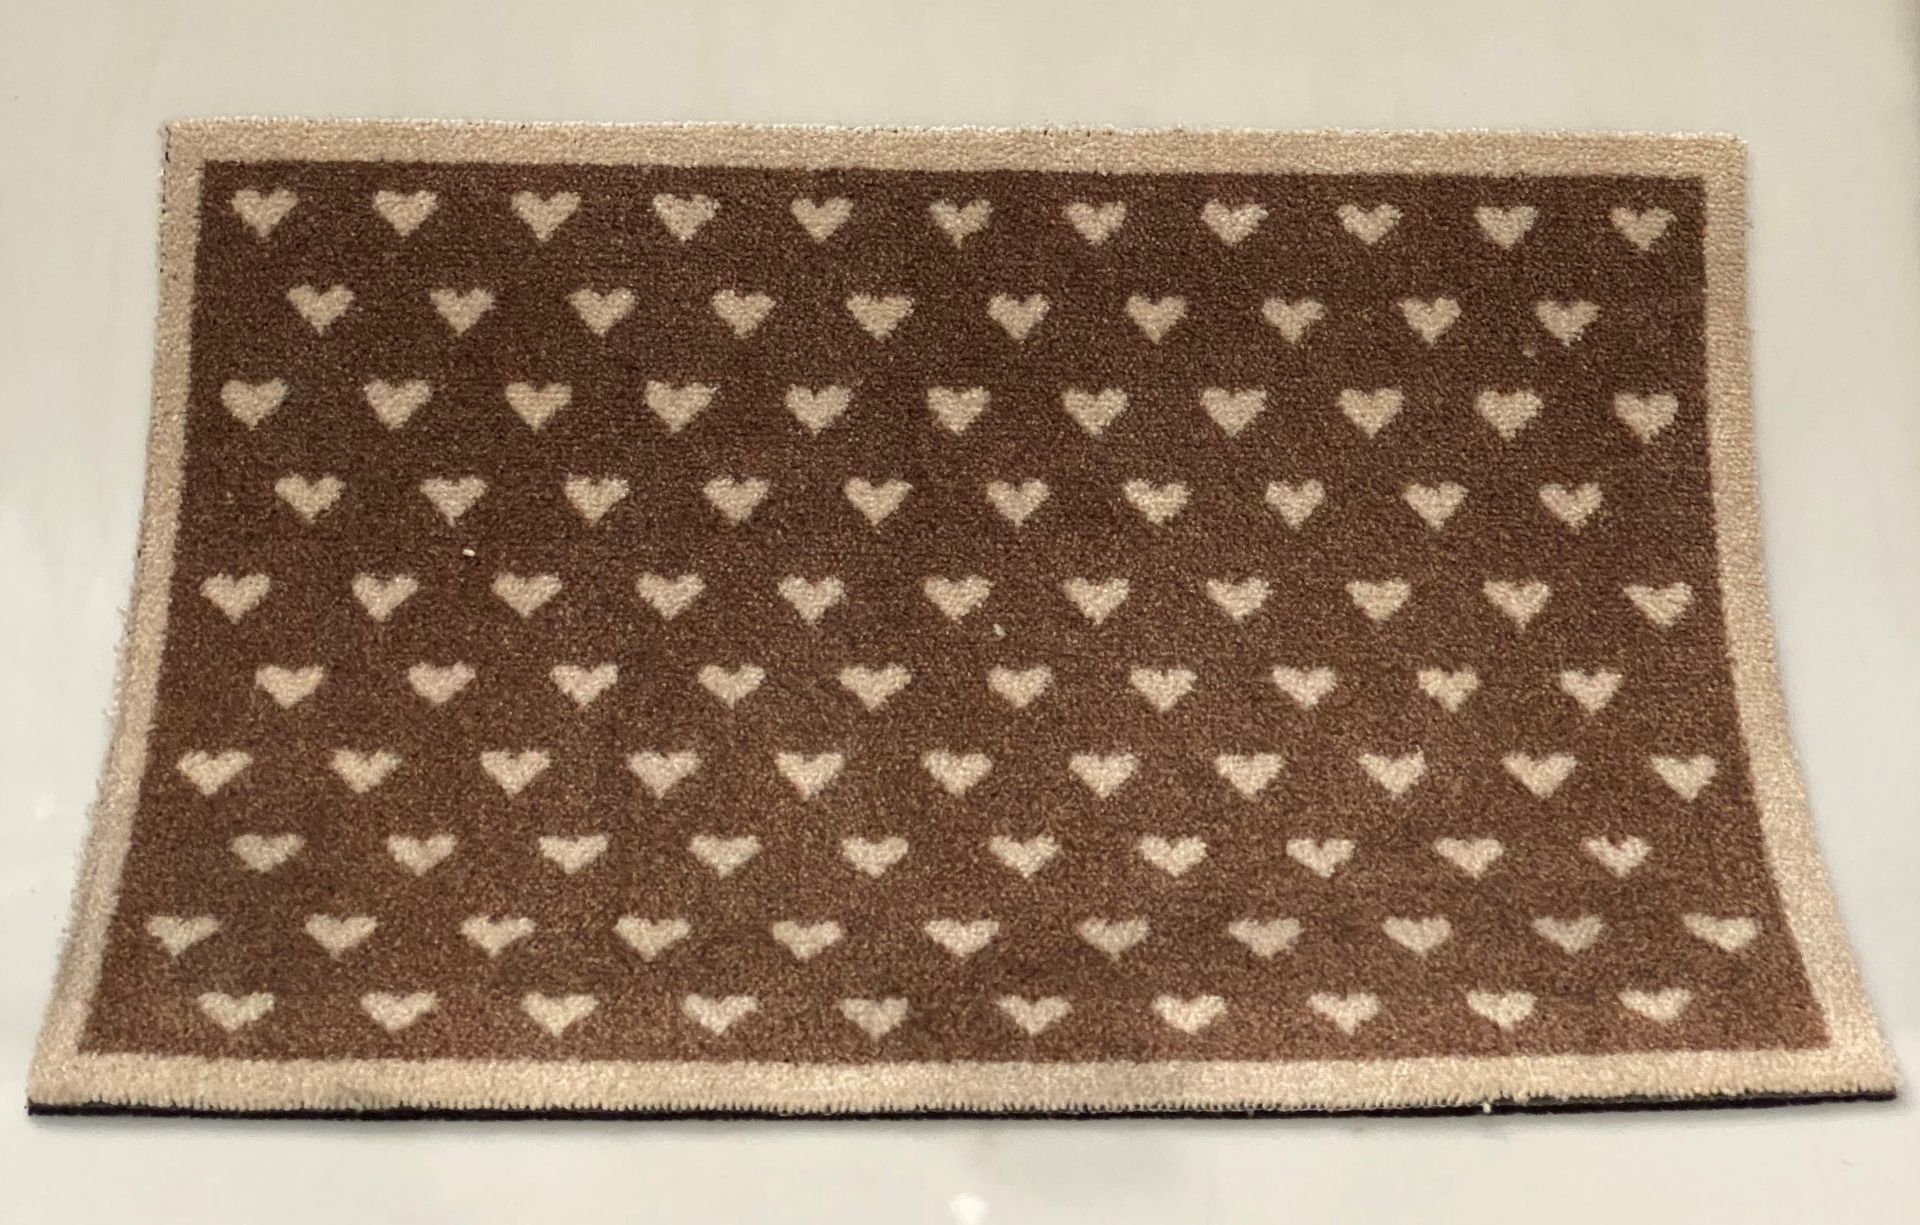 5 x Brown/beige rubber backed heart design doormats - 75cm x 50cm